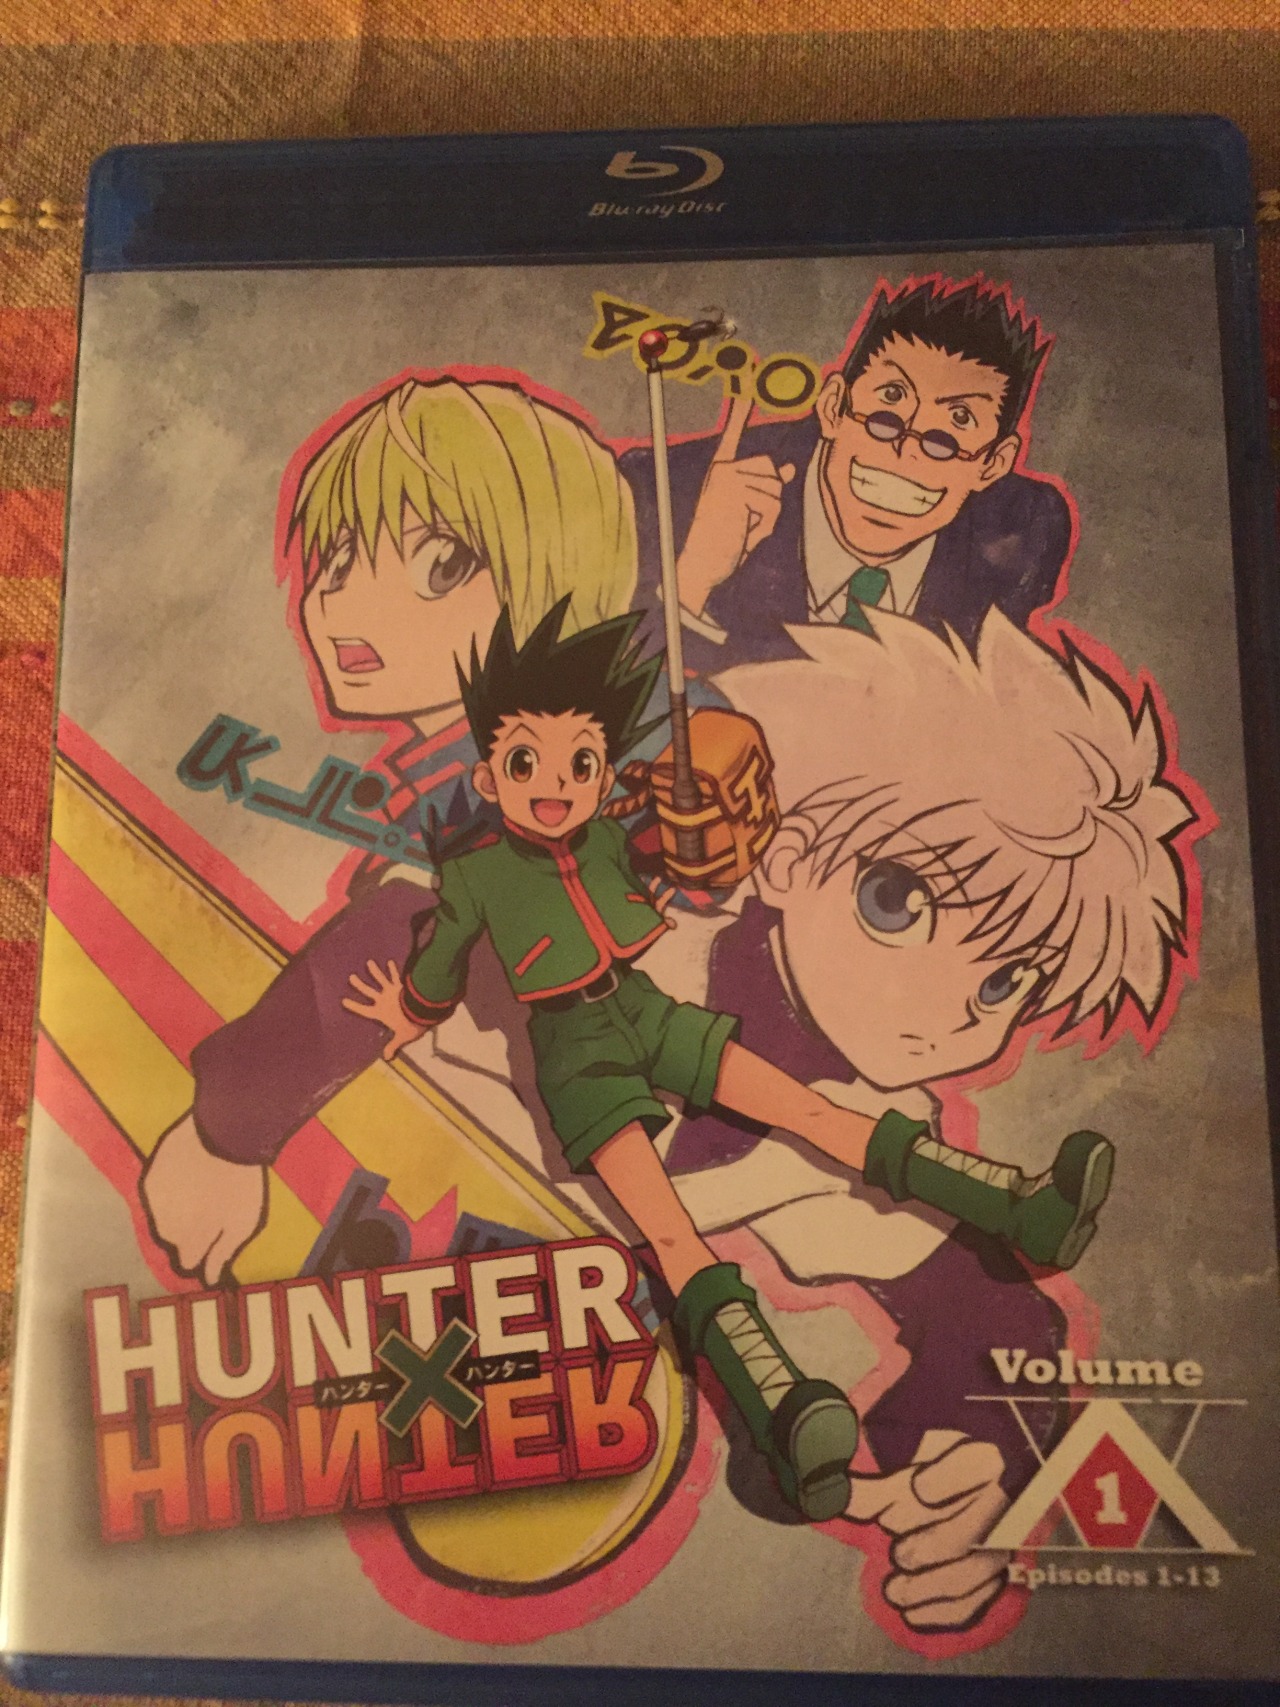 Zero Changes — Hunter x Hunter (2011) blu-ray Volume 1